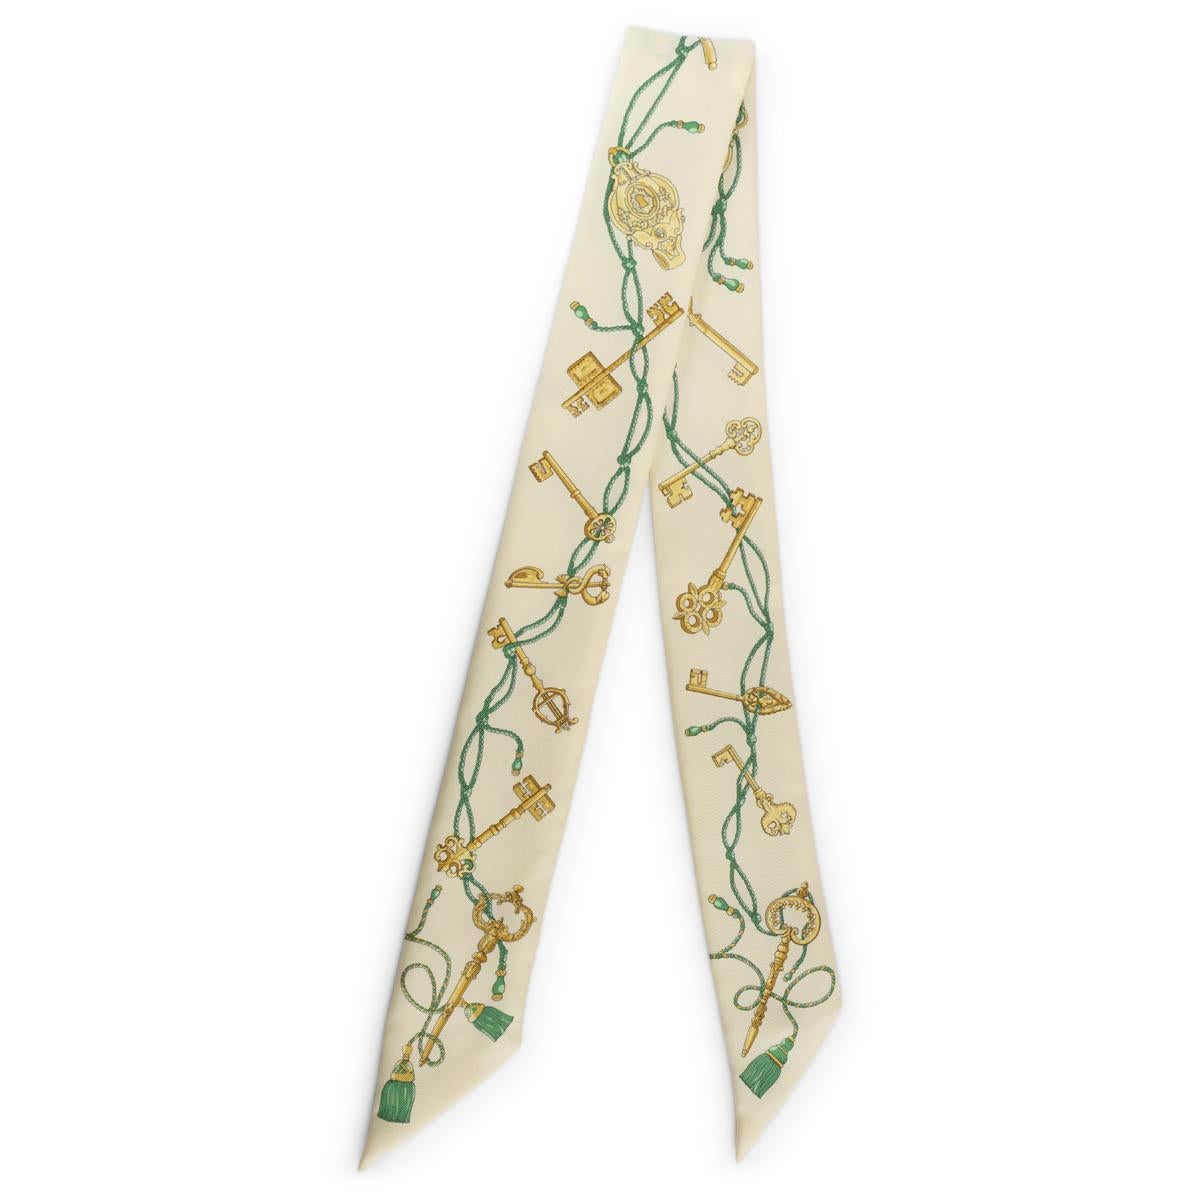 100% authentischer Hermès Les Cles Seidentwilli in hellgelb, grün und gold. Wurde getragen und ist in ausgezeichnetem Zustand. 

Messungen
Breite	5cm (2in)
Länge	86cm (33.5in)

Alle unsere Angebote umfassen nur den aufgeführten Artikel, sofern in